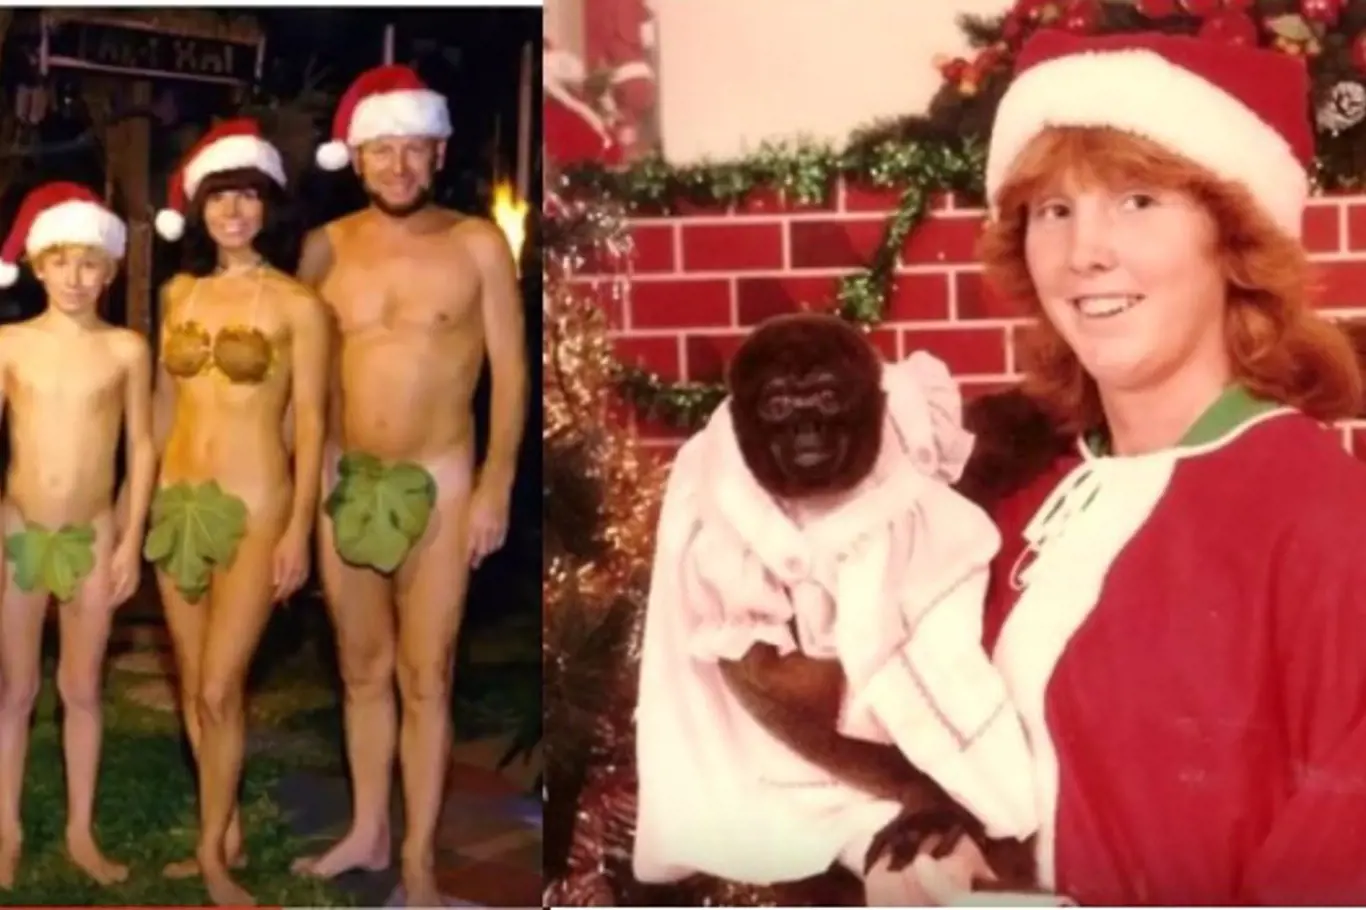 Nejtrapnější rodinné vánoční fotografie